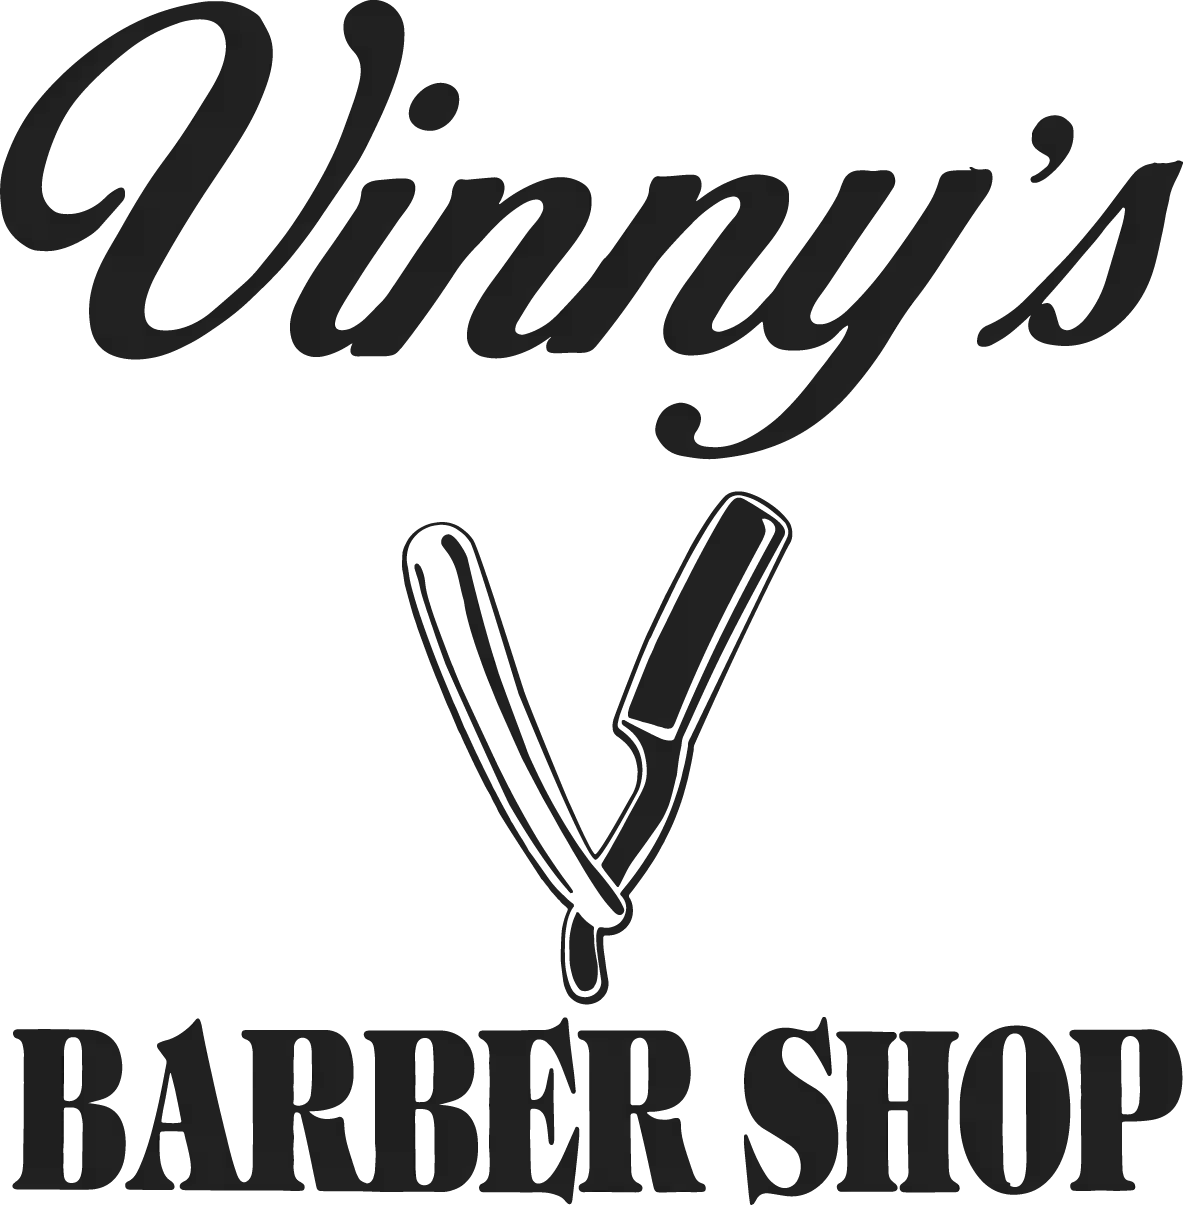 Vinny's Barber Shop